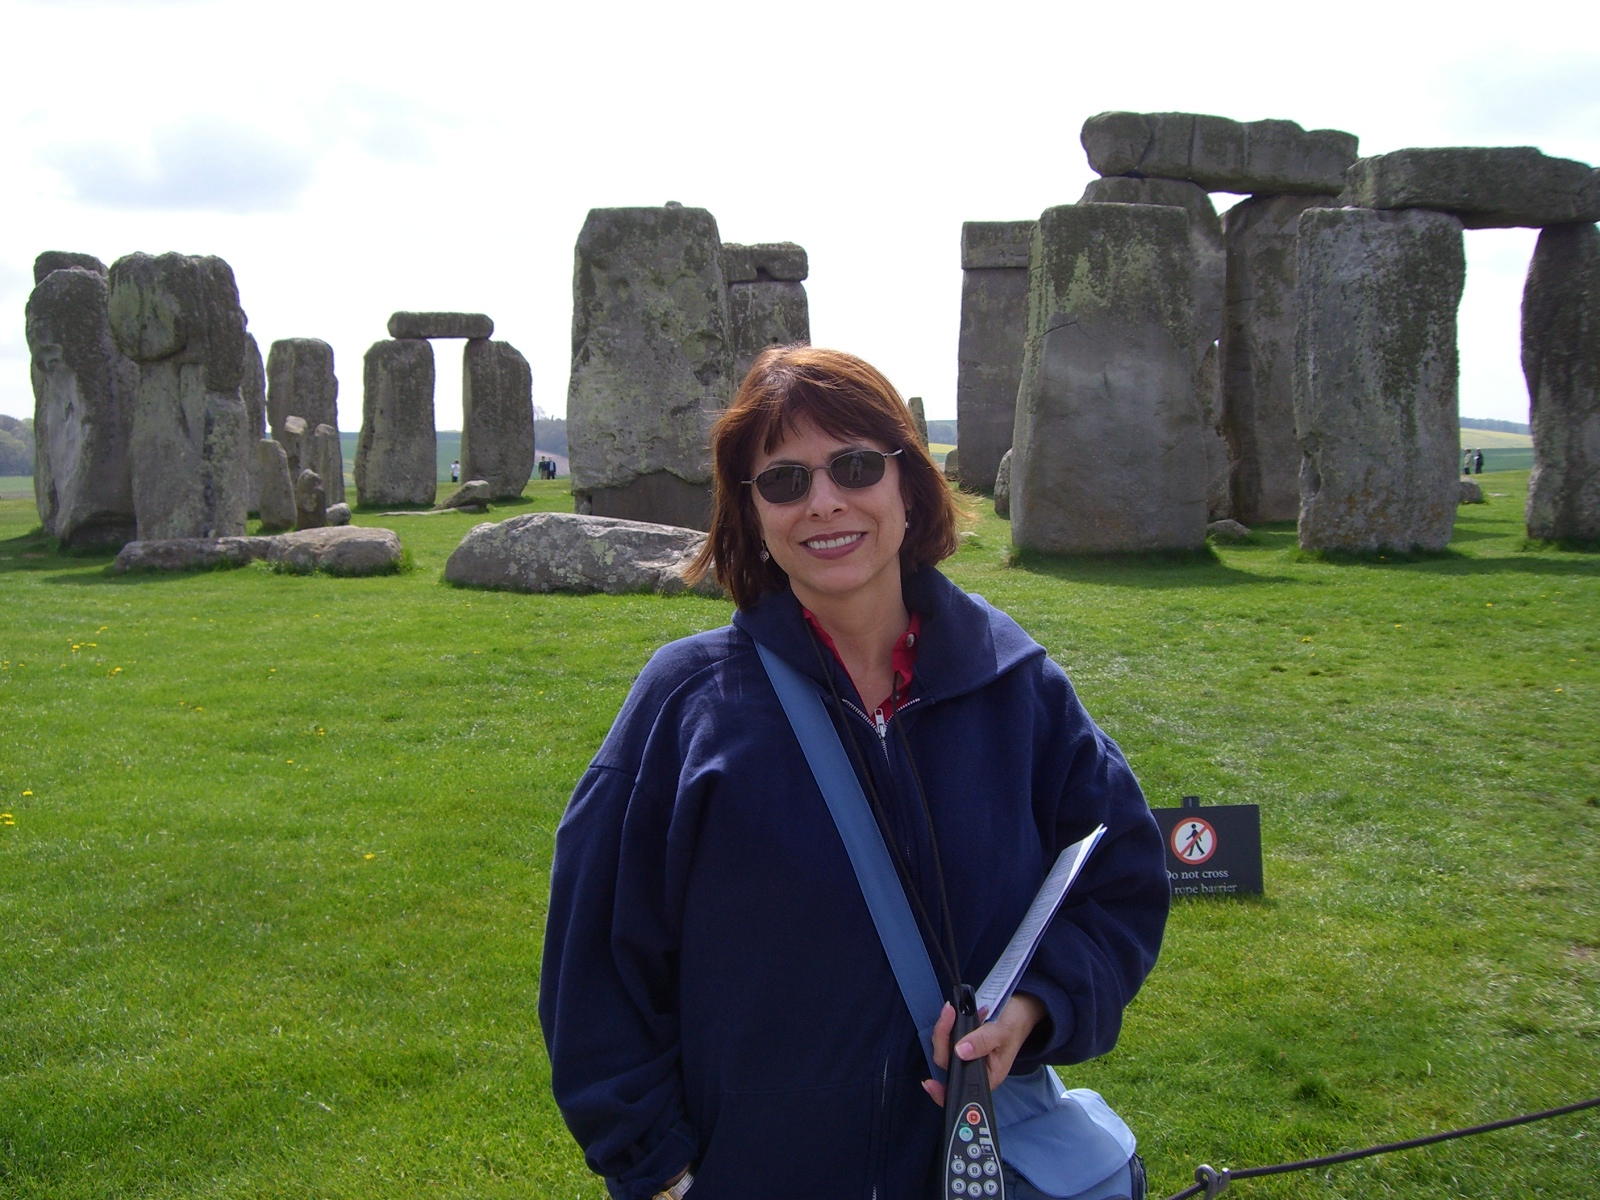 Anita at Stonehenge